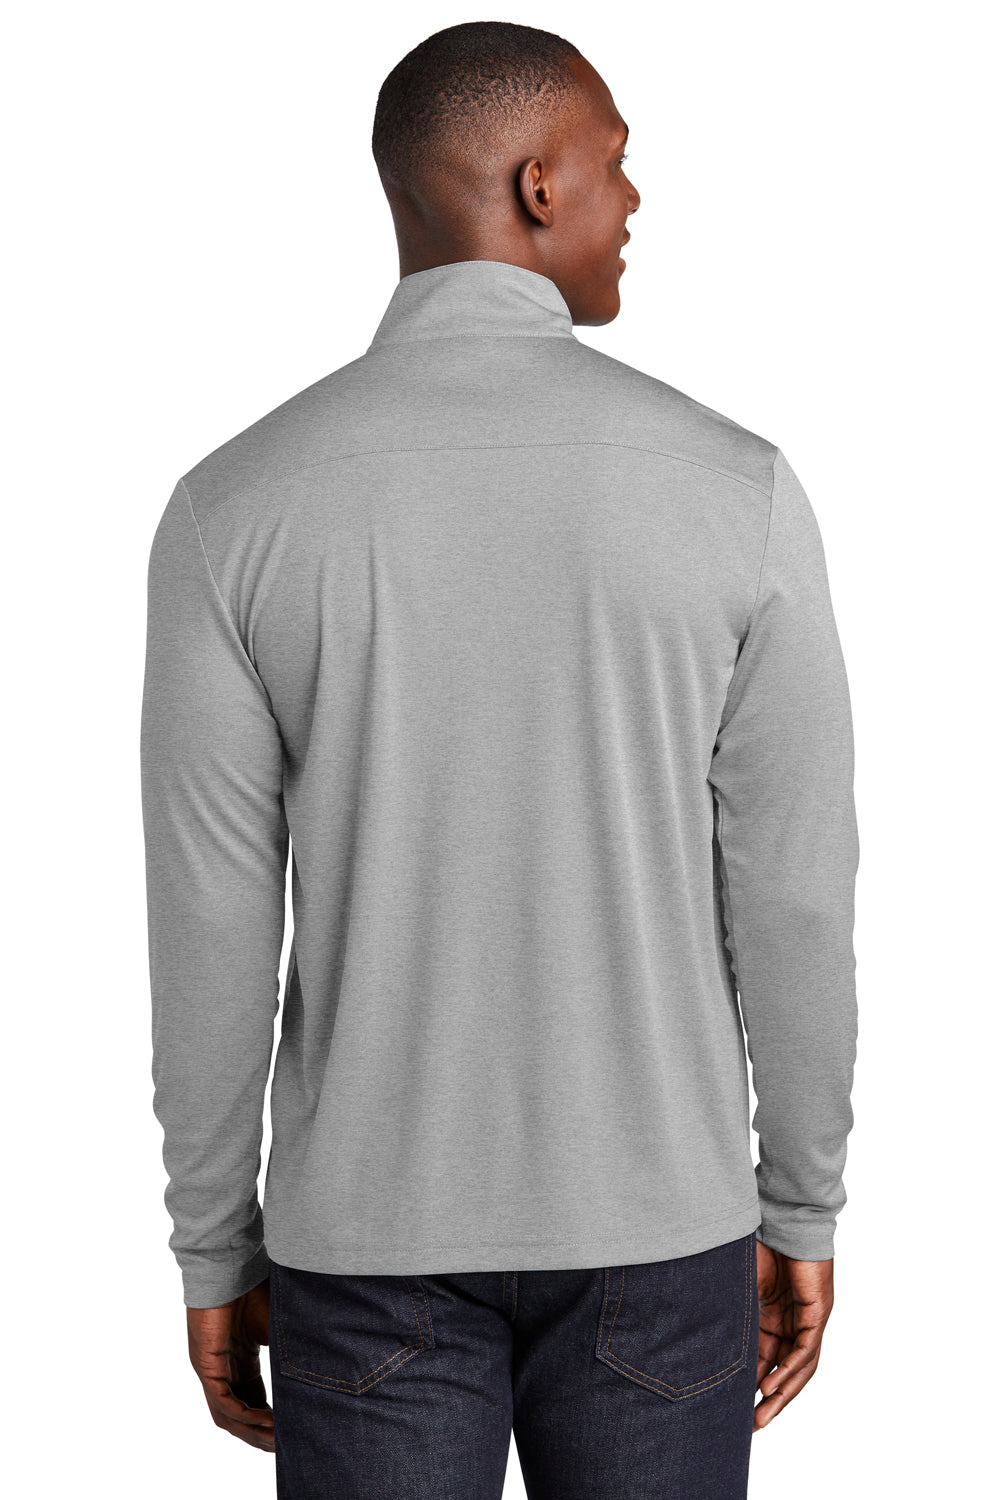 Sport-Tek Mens Endeavor 1/4 Zip Sweatshirt Heather Light Grey Side